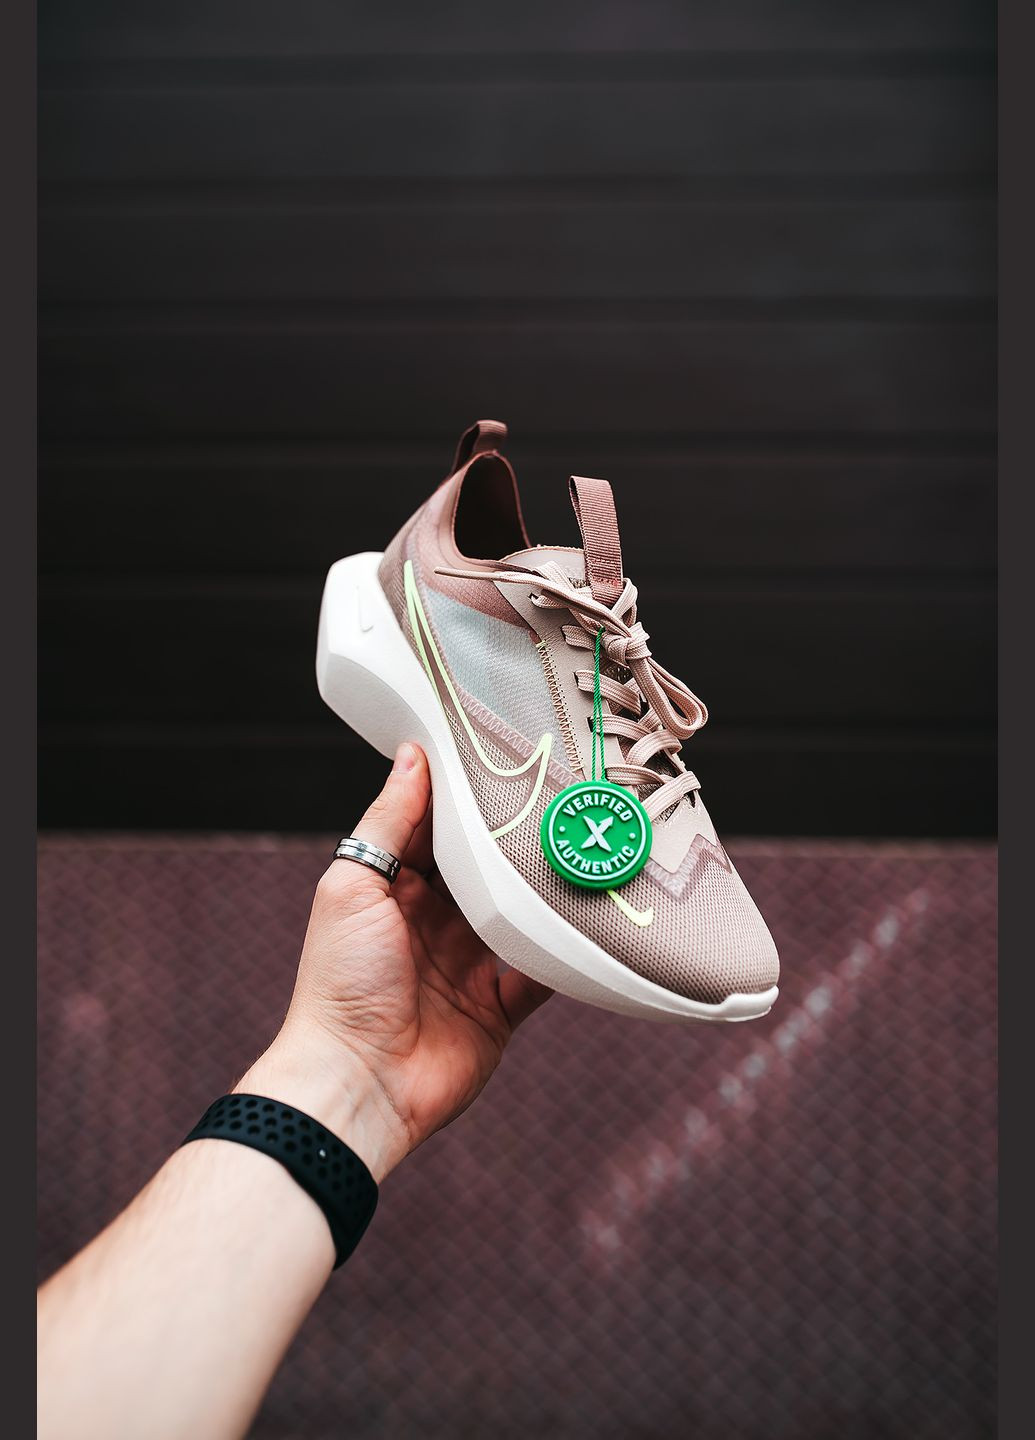 Бежеві осінні кросівки жіночі Nike Vista Lite